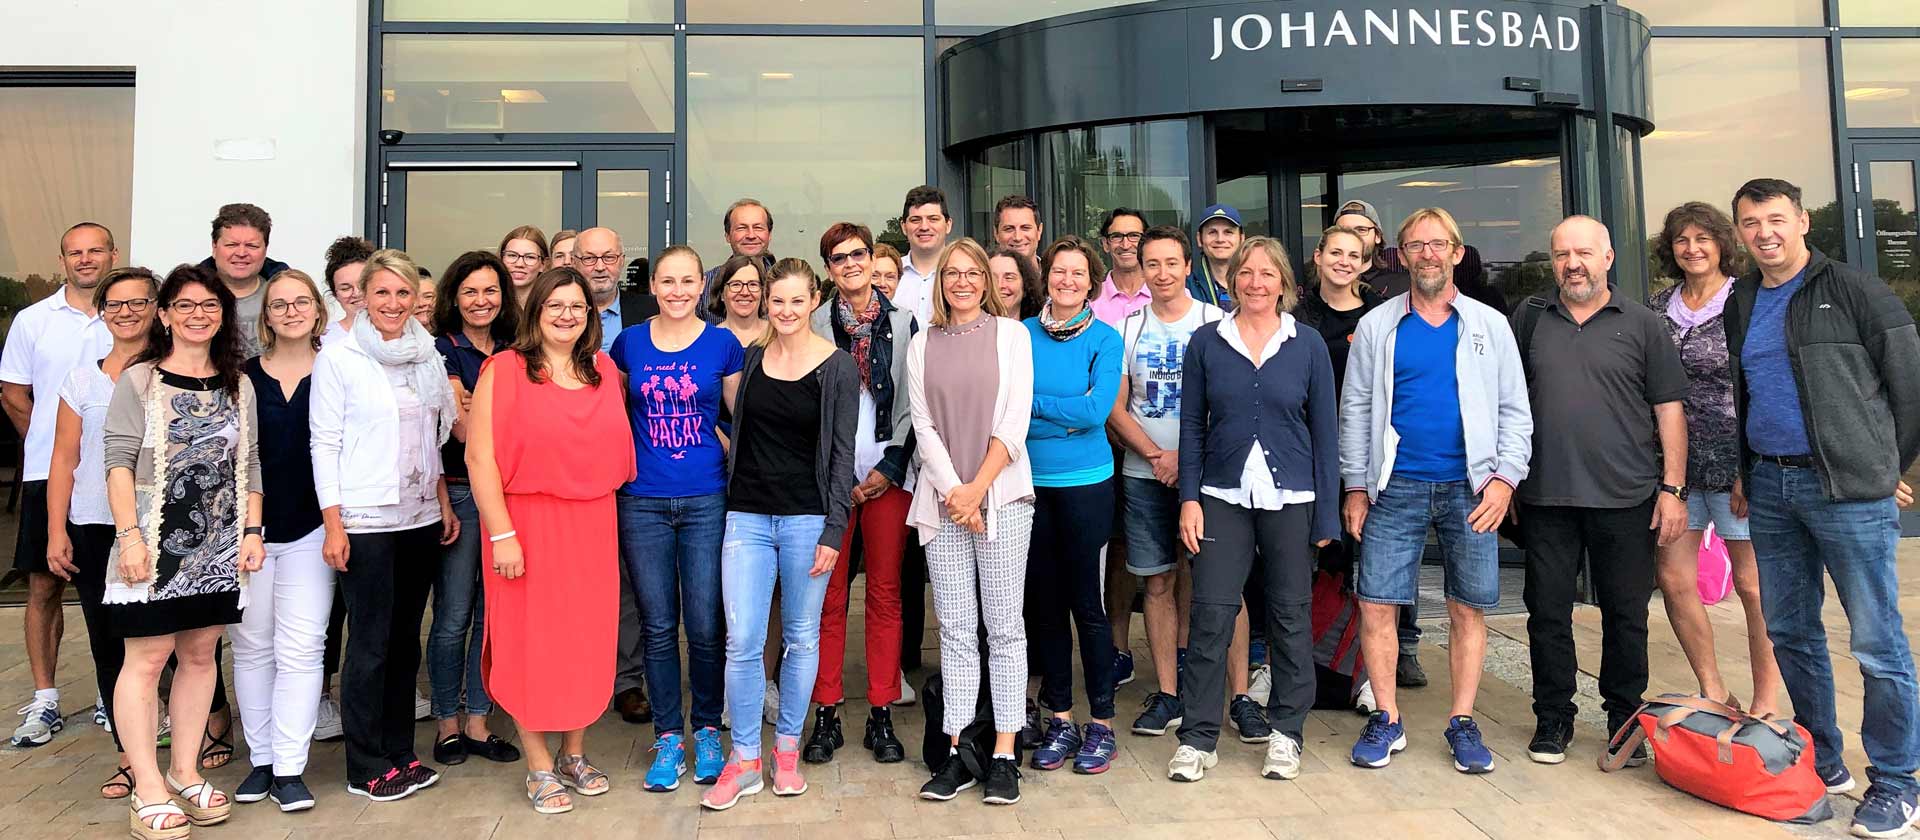 Die teilnehmenden Mitarbeiter*innen der Stadtverwaltung Landshut mit Anja König (1. Reihe links) vor dem Johannesbad in Bad Füssing (Foto: Anja König)